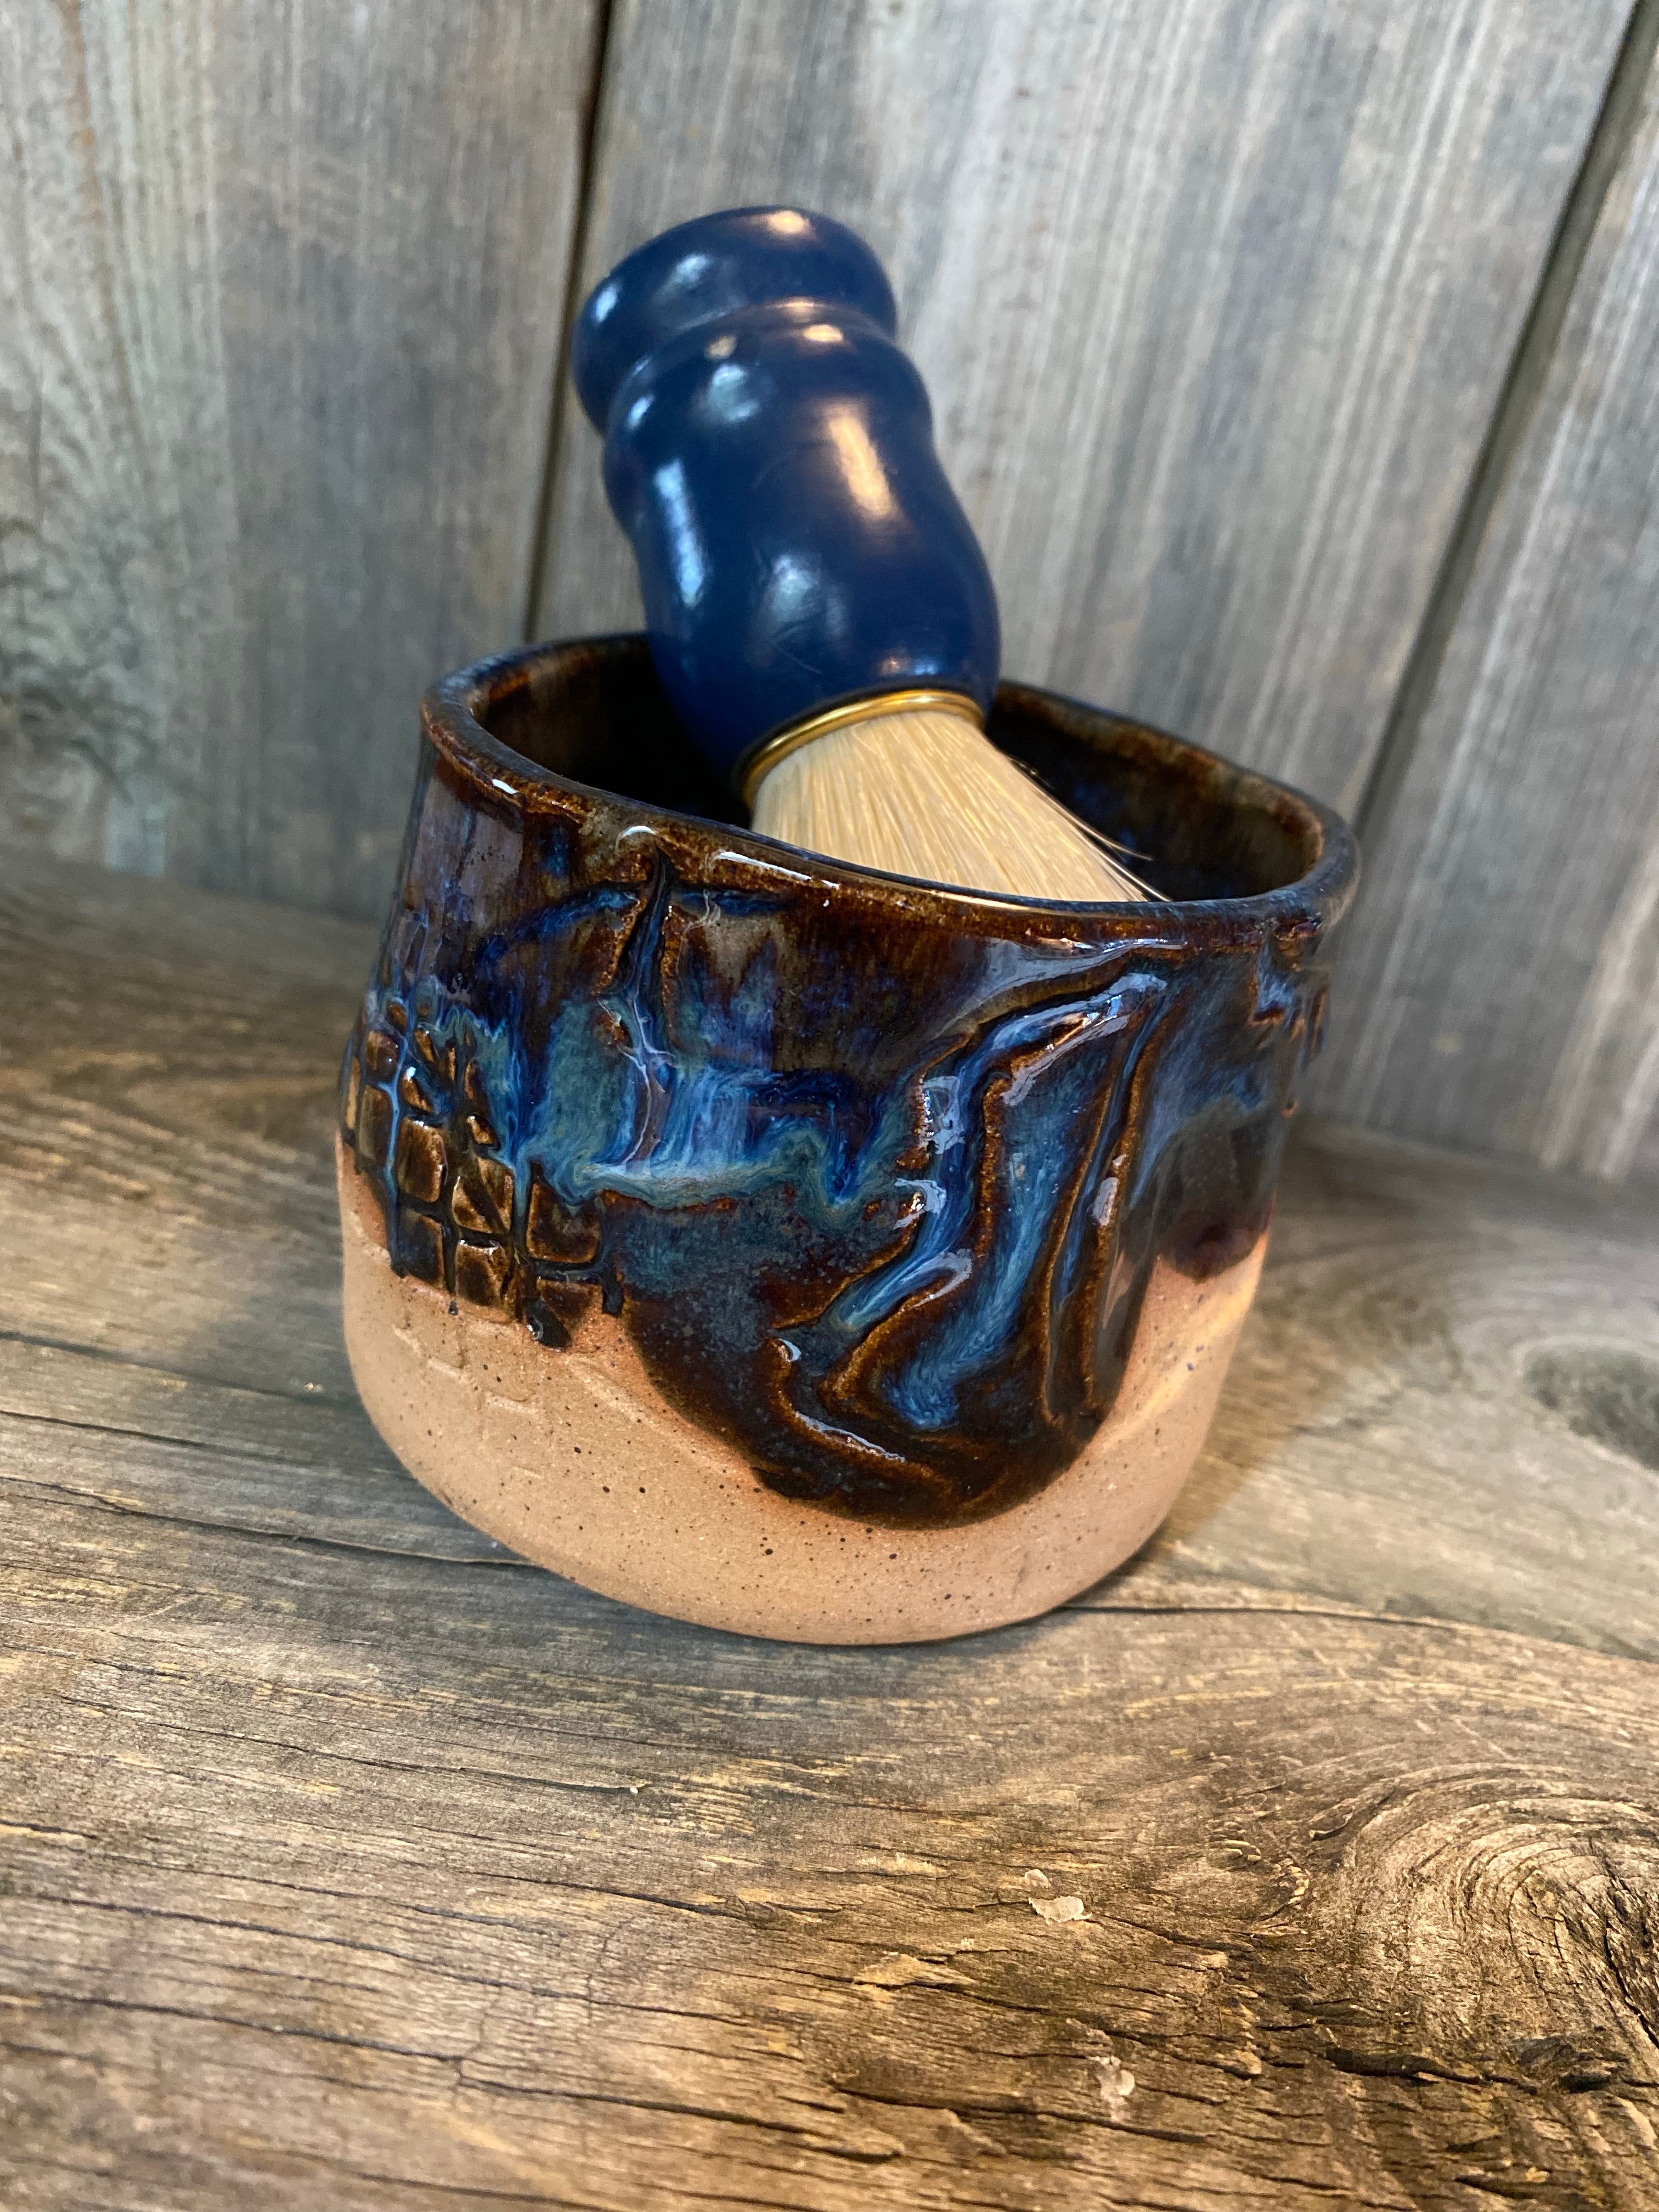 Artisanal Lathering Bowl